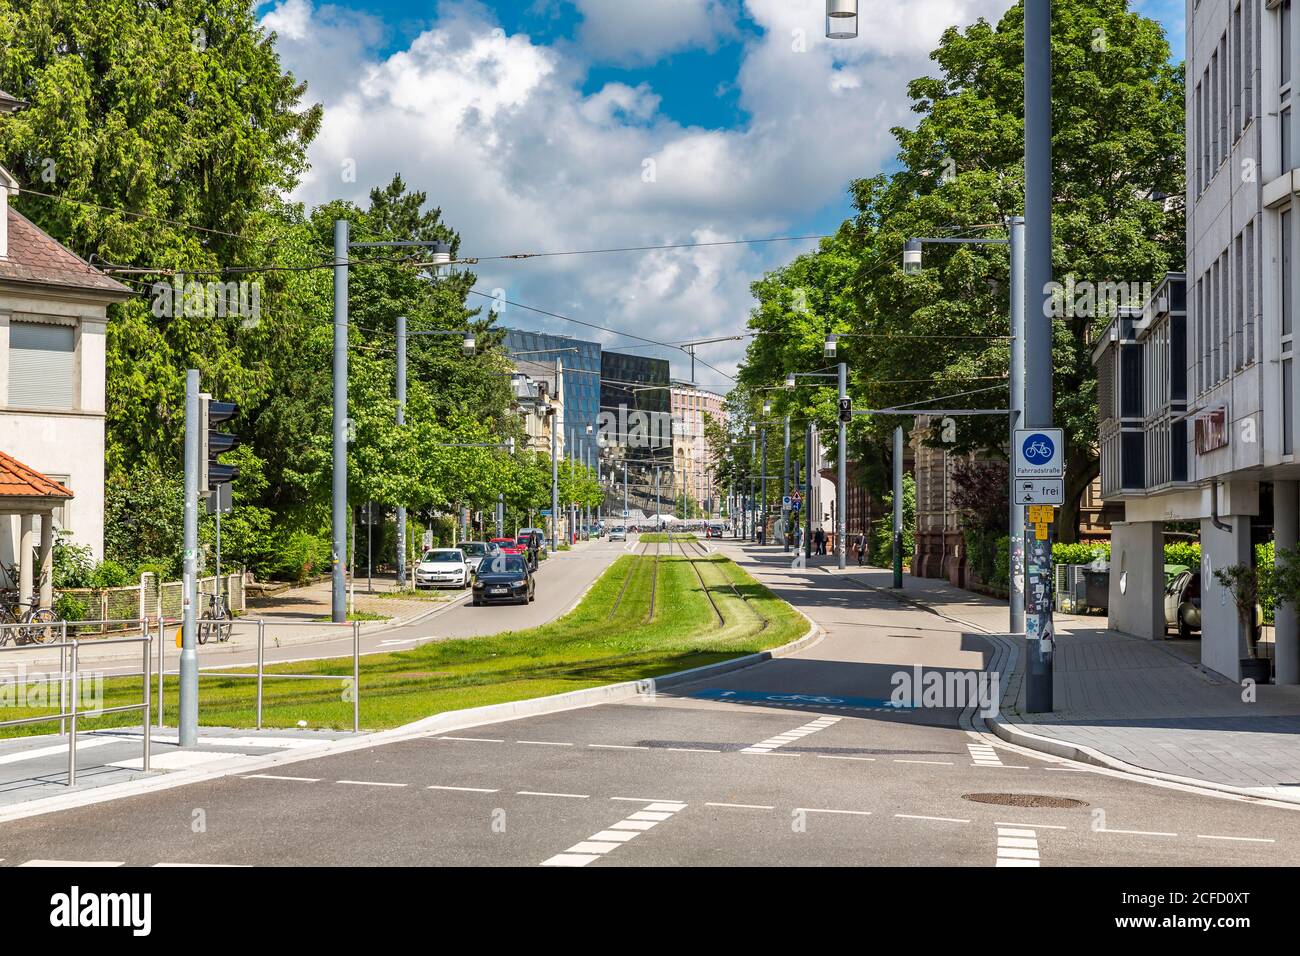 Réseau de tram, à l'arrière de la bibliothèque universitaire, Werthmannstrasse, Freiburg, Freiburg im Breisgau, Bade-Wurtemberg, Allemagne, Europe Banque D'Images